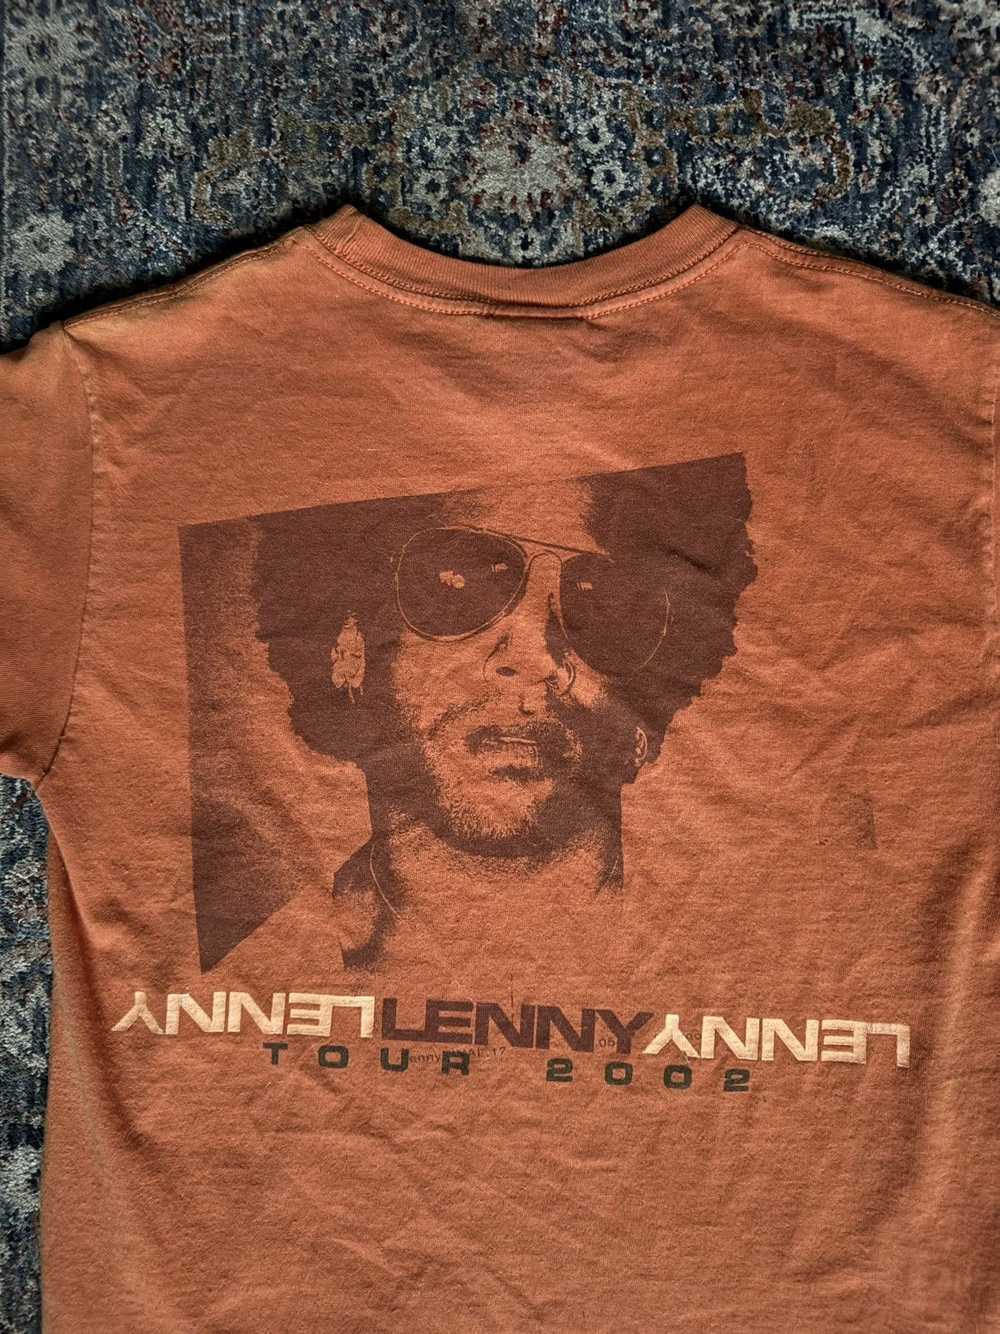 Vintage 2002 Lenny Kravits t shirt - image 3